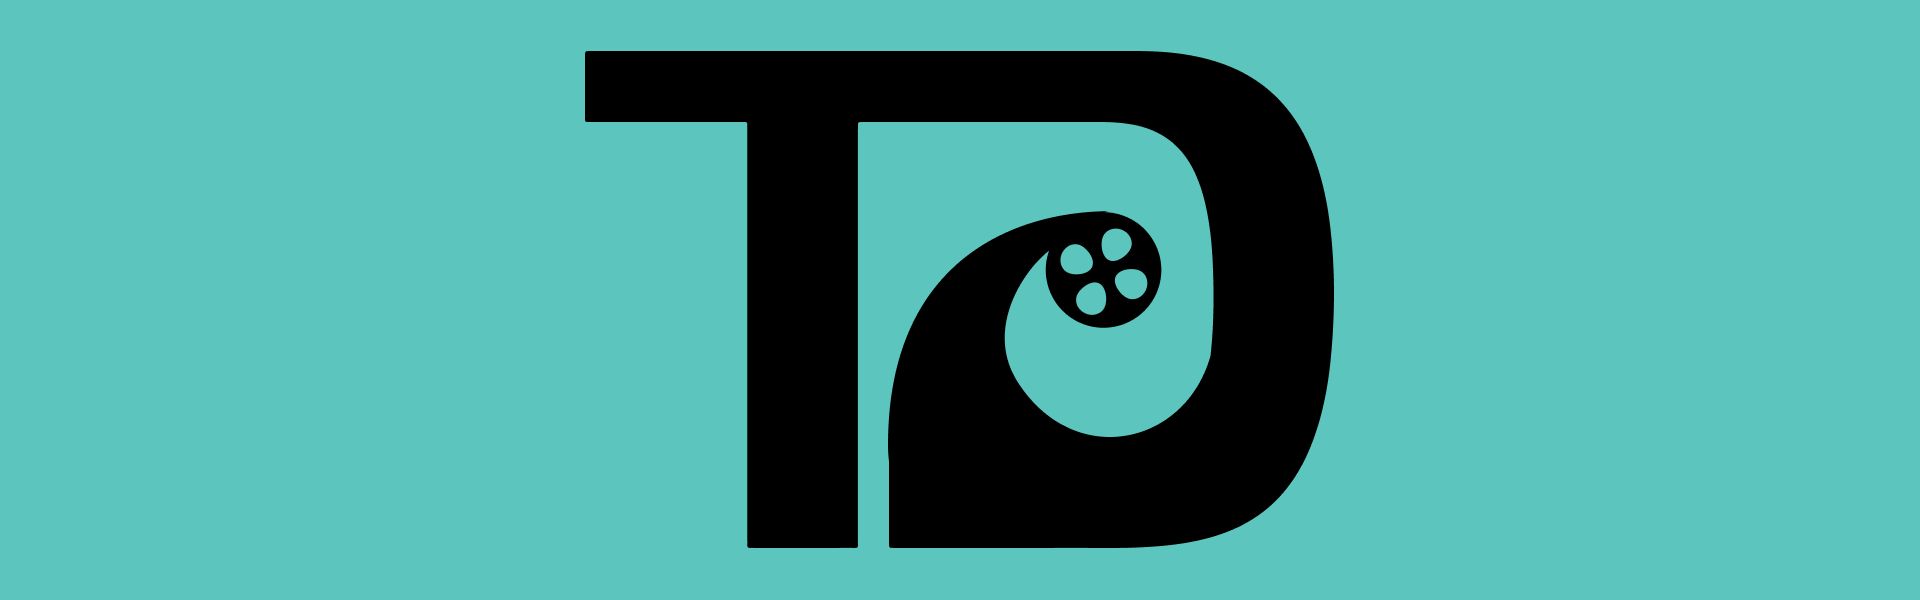 TD Bank випустив освітній відеоролик про халвінг